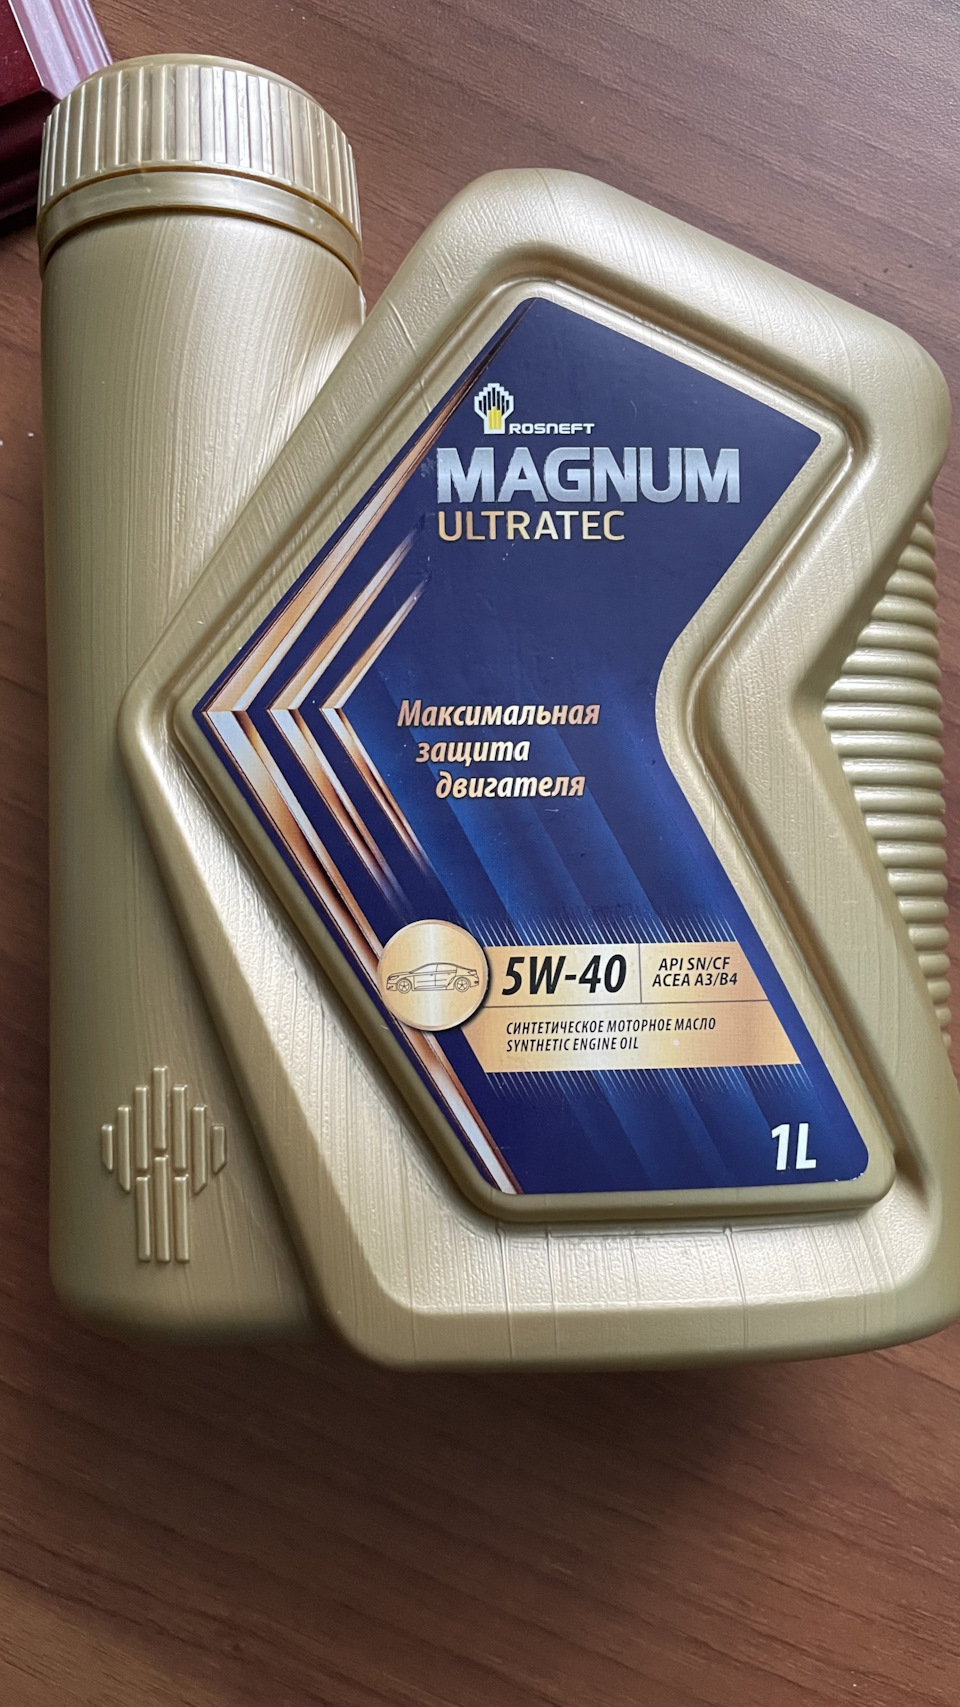 Масло роснефть магнум ультратек купить. Rosneft Magnum Ultratec 5w40 реклама. Rosneft Magnum Ultratec. Упаковка моторного масла Magnum Ultratec. Справка от производитель моторного масла Magnum Ultratec.